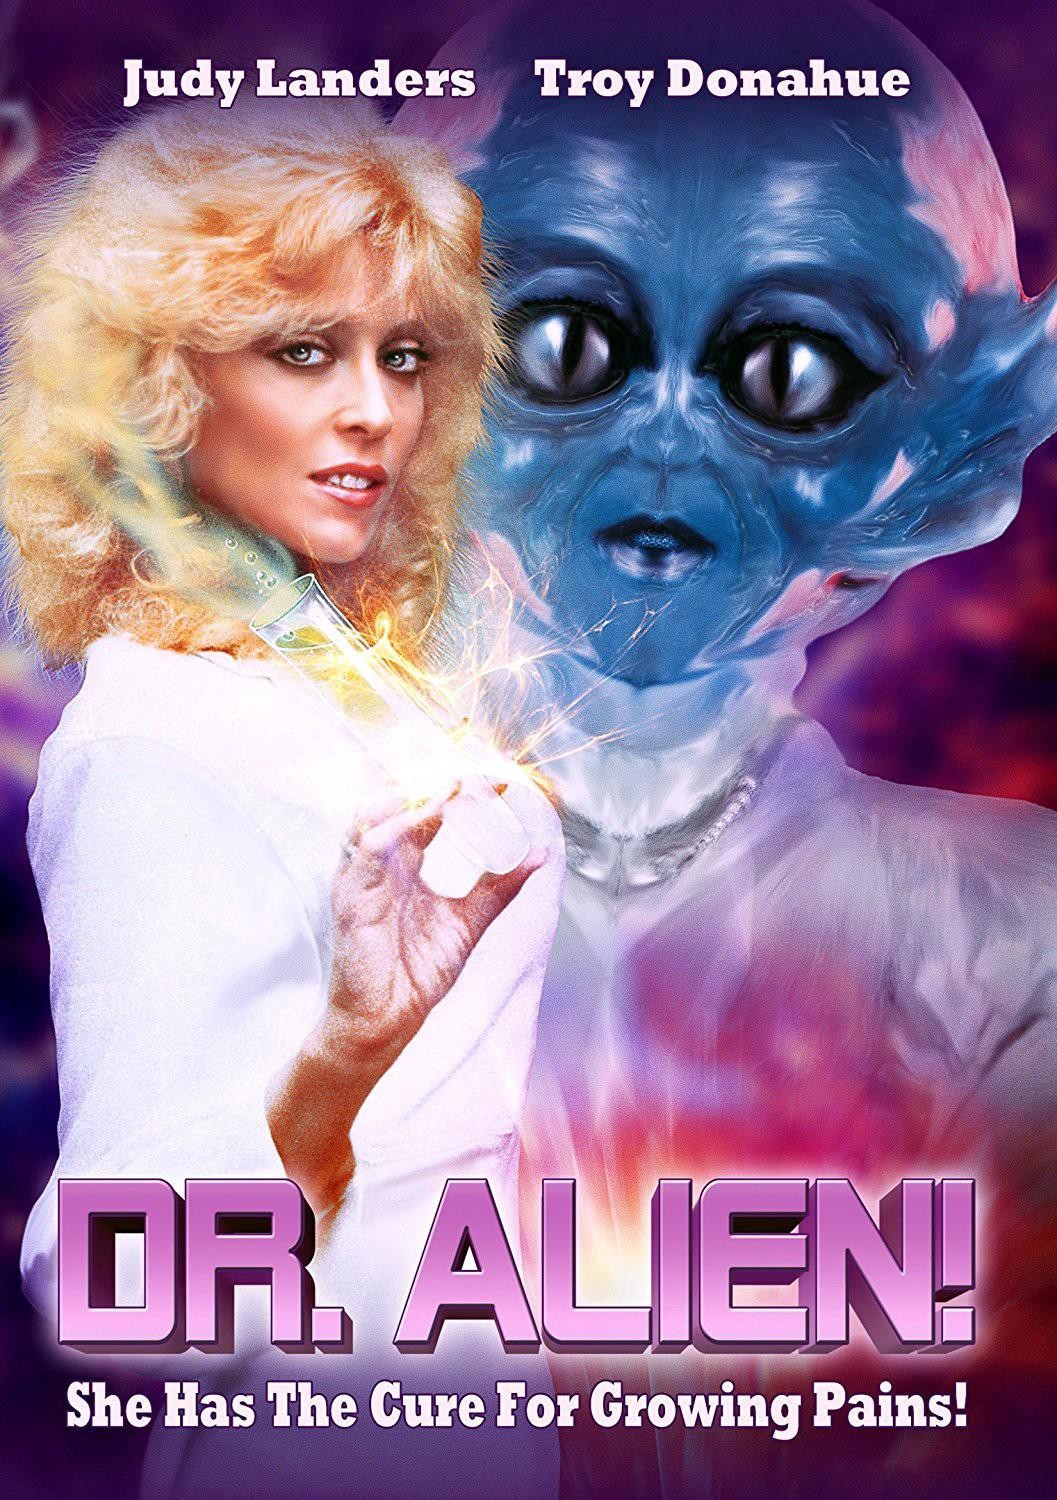 [外星博士 Dr. Alien][1989][美国][喜剧][英语]